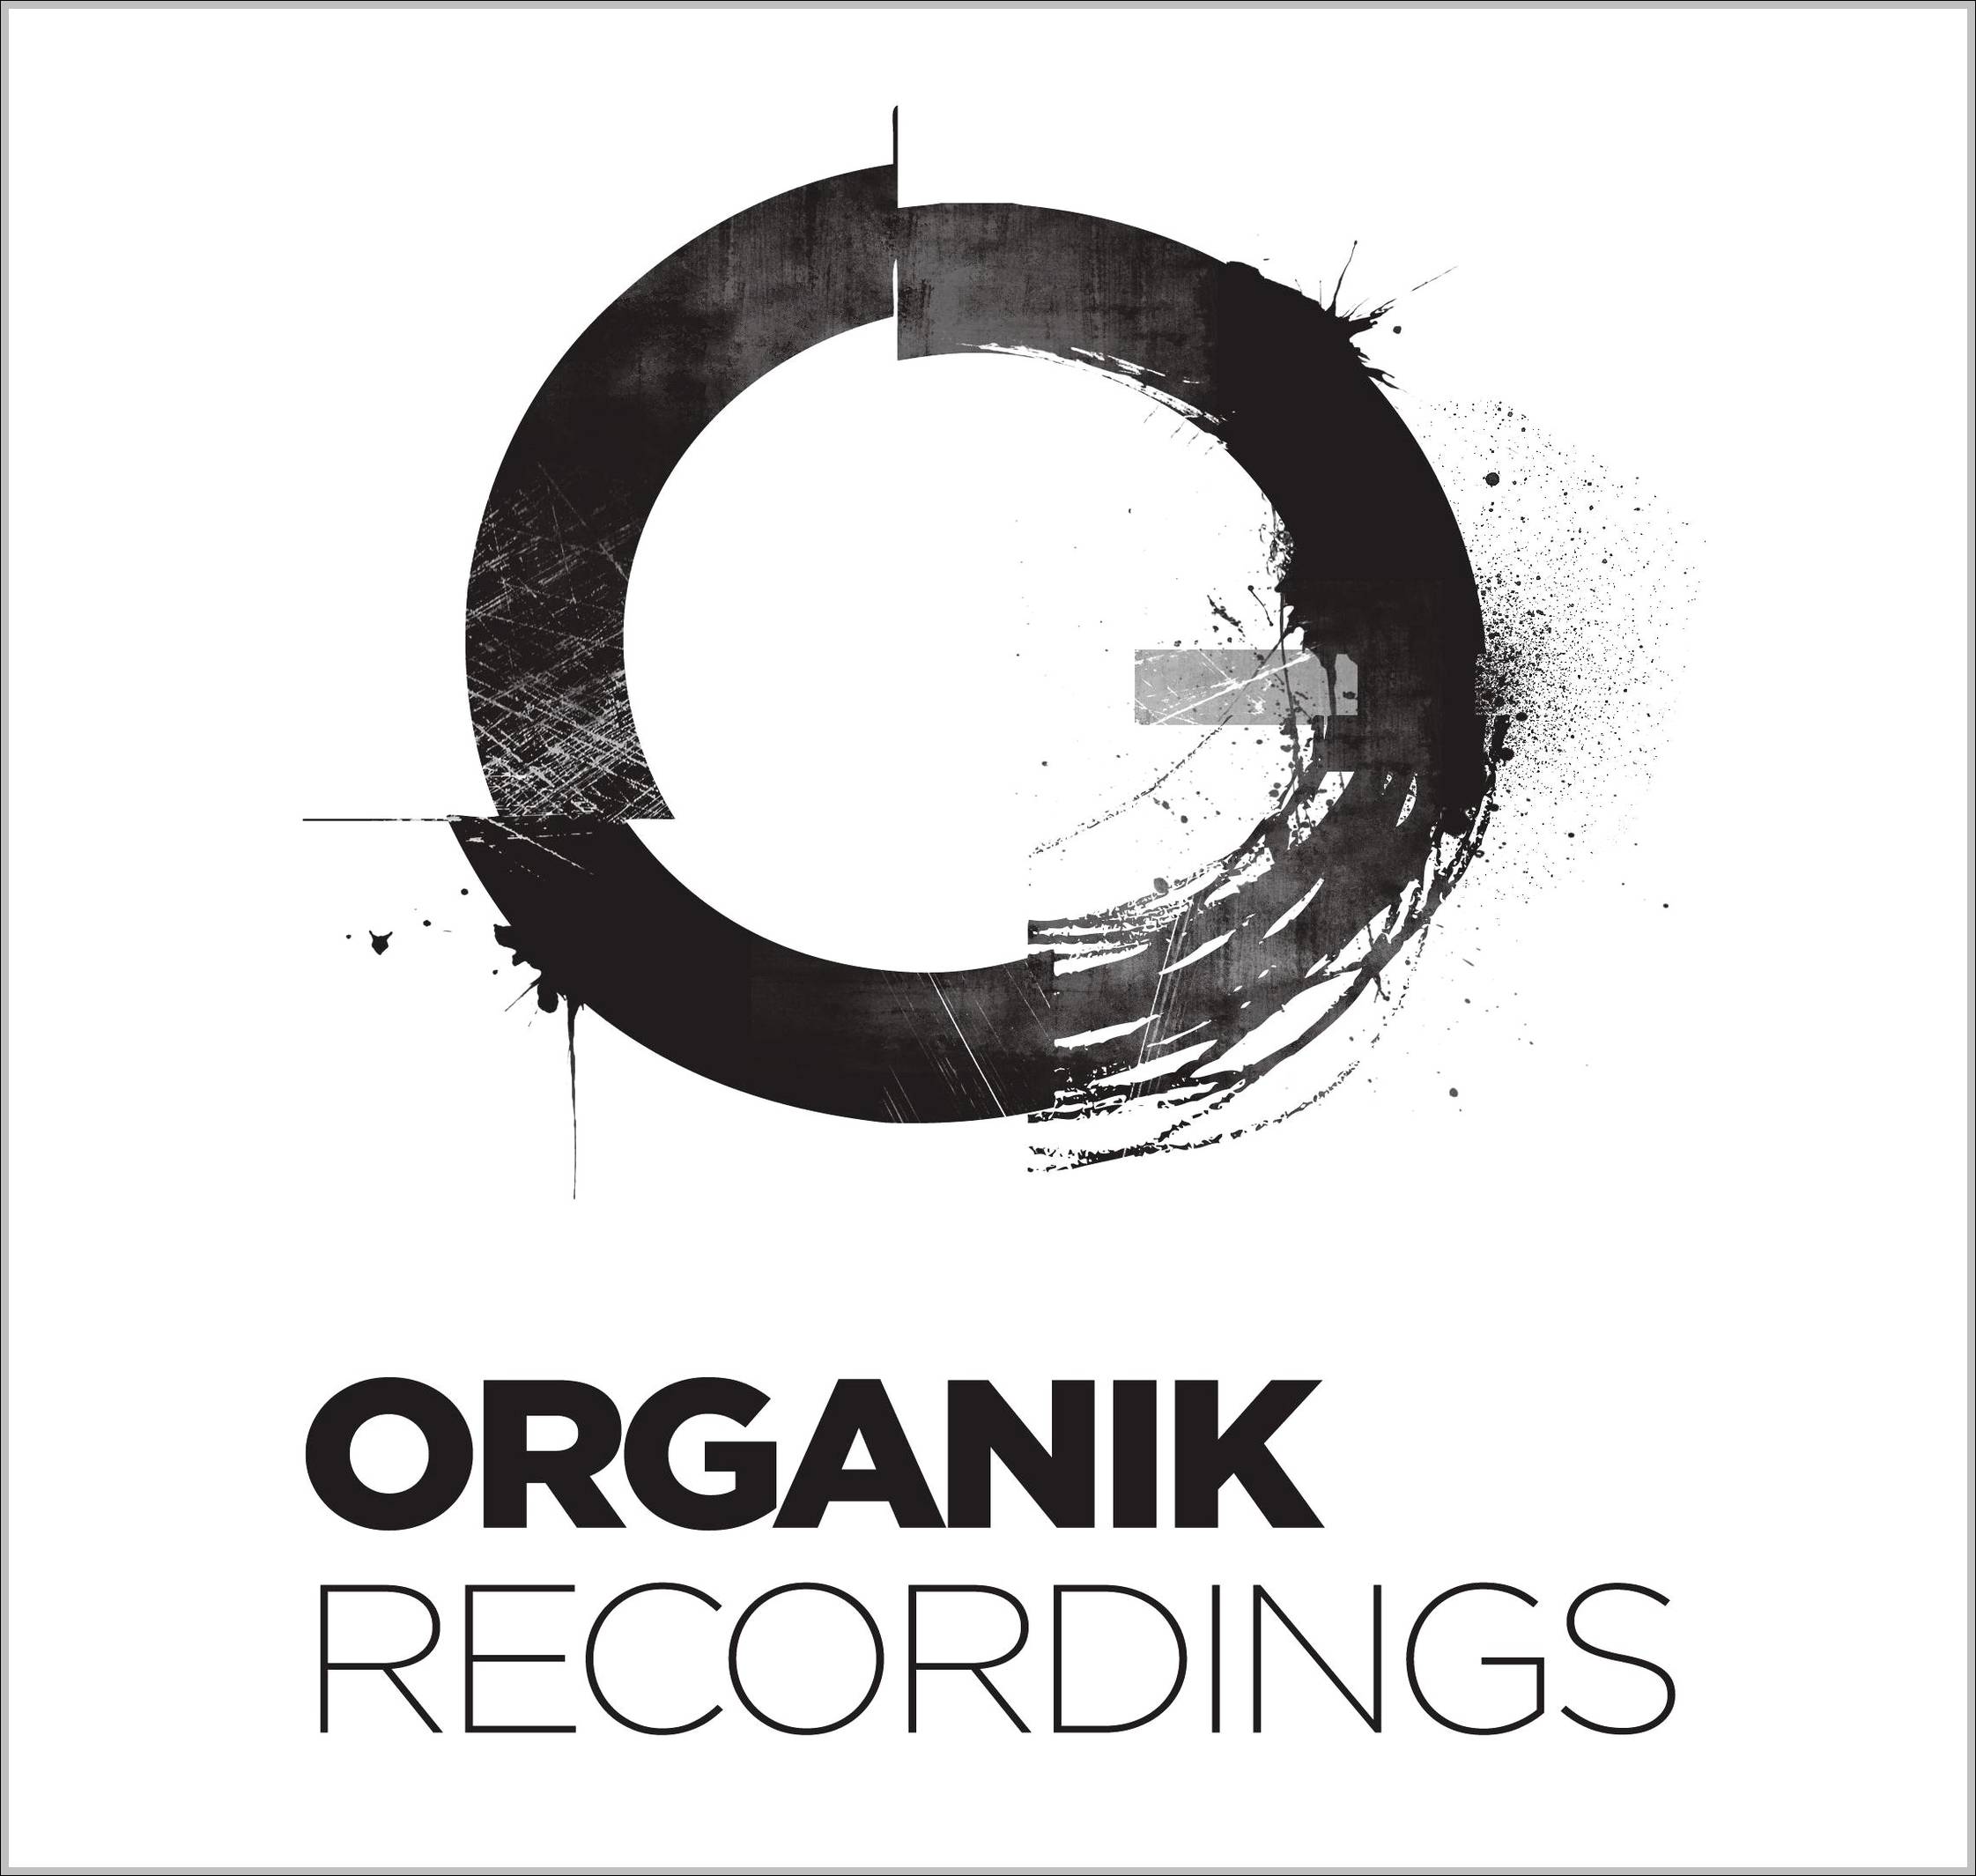 Organik Recordings sign